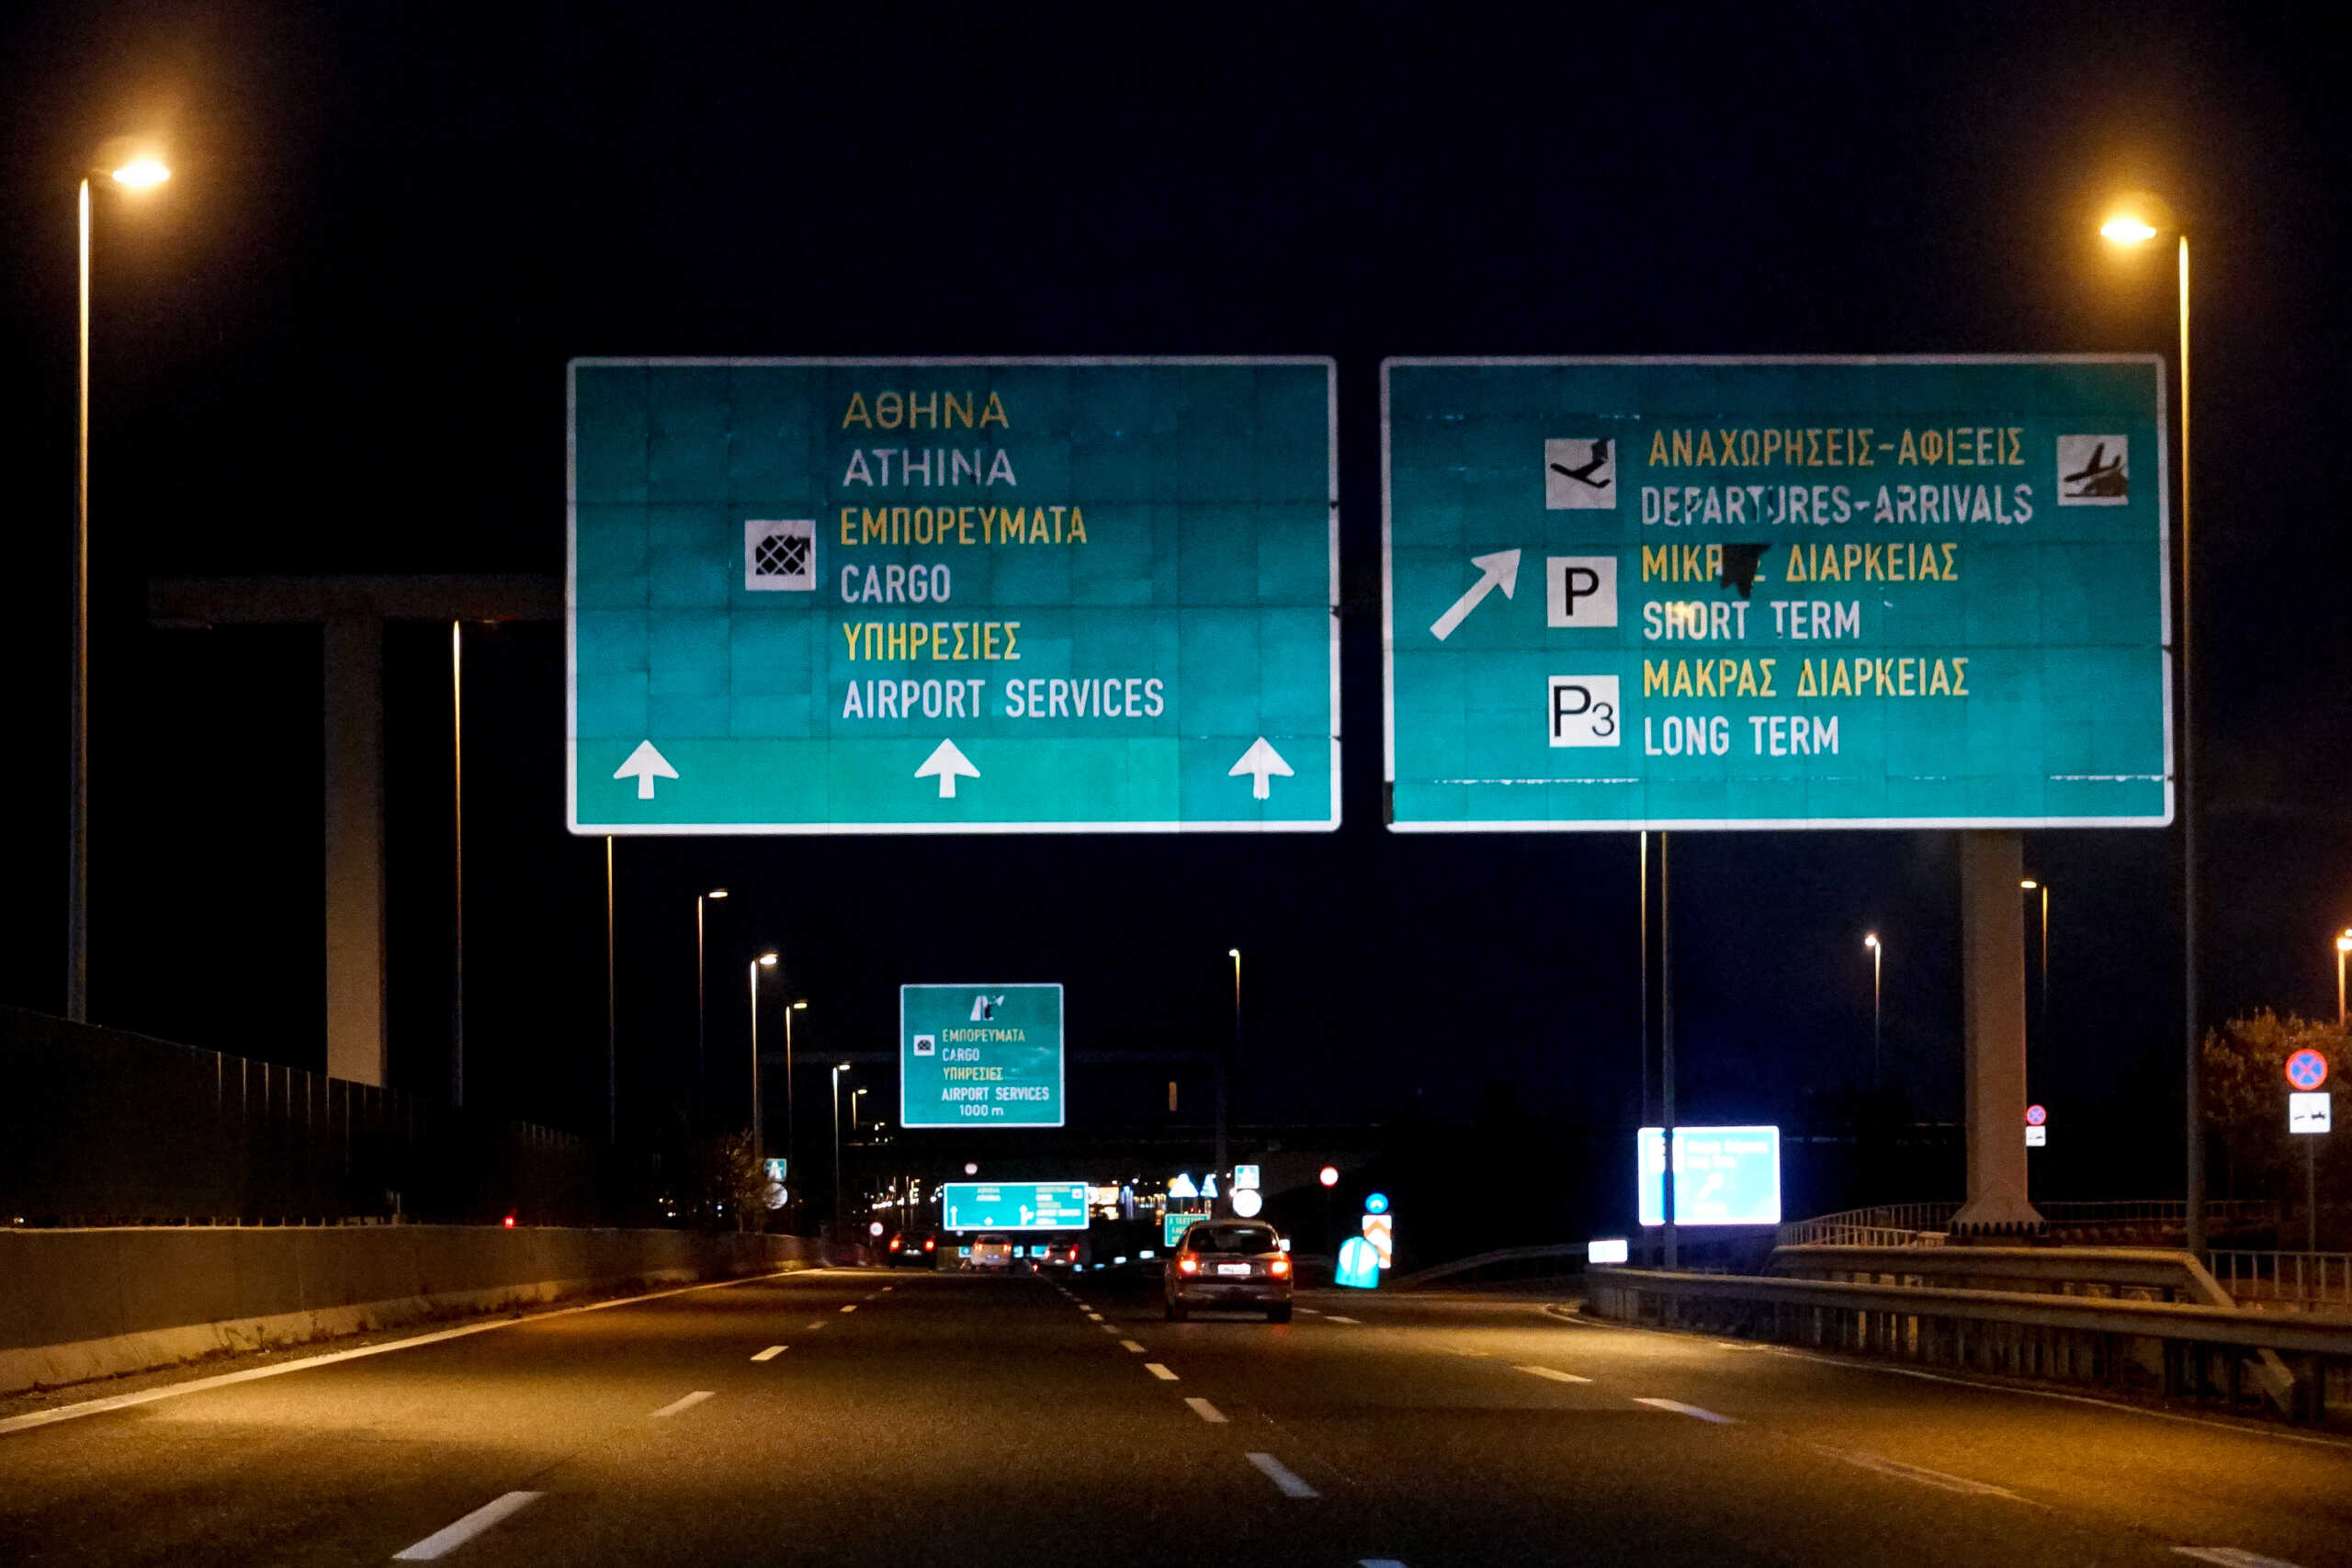 Αττική Οδός: Κλειστή η έξοδος προς λεωφόρο Πεντέλης προς Αεροδρόμιο από τις 10 το βράδυ έως τις 6 το πρωί του Σαββάτου λόγω έργων